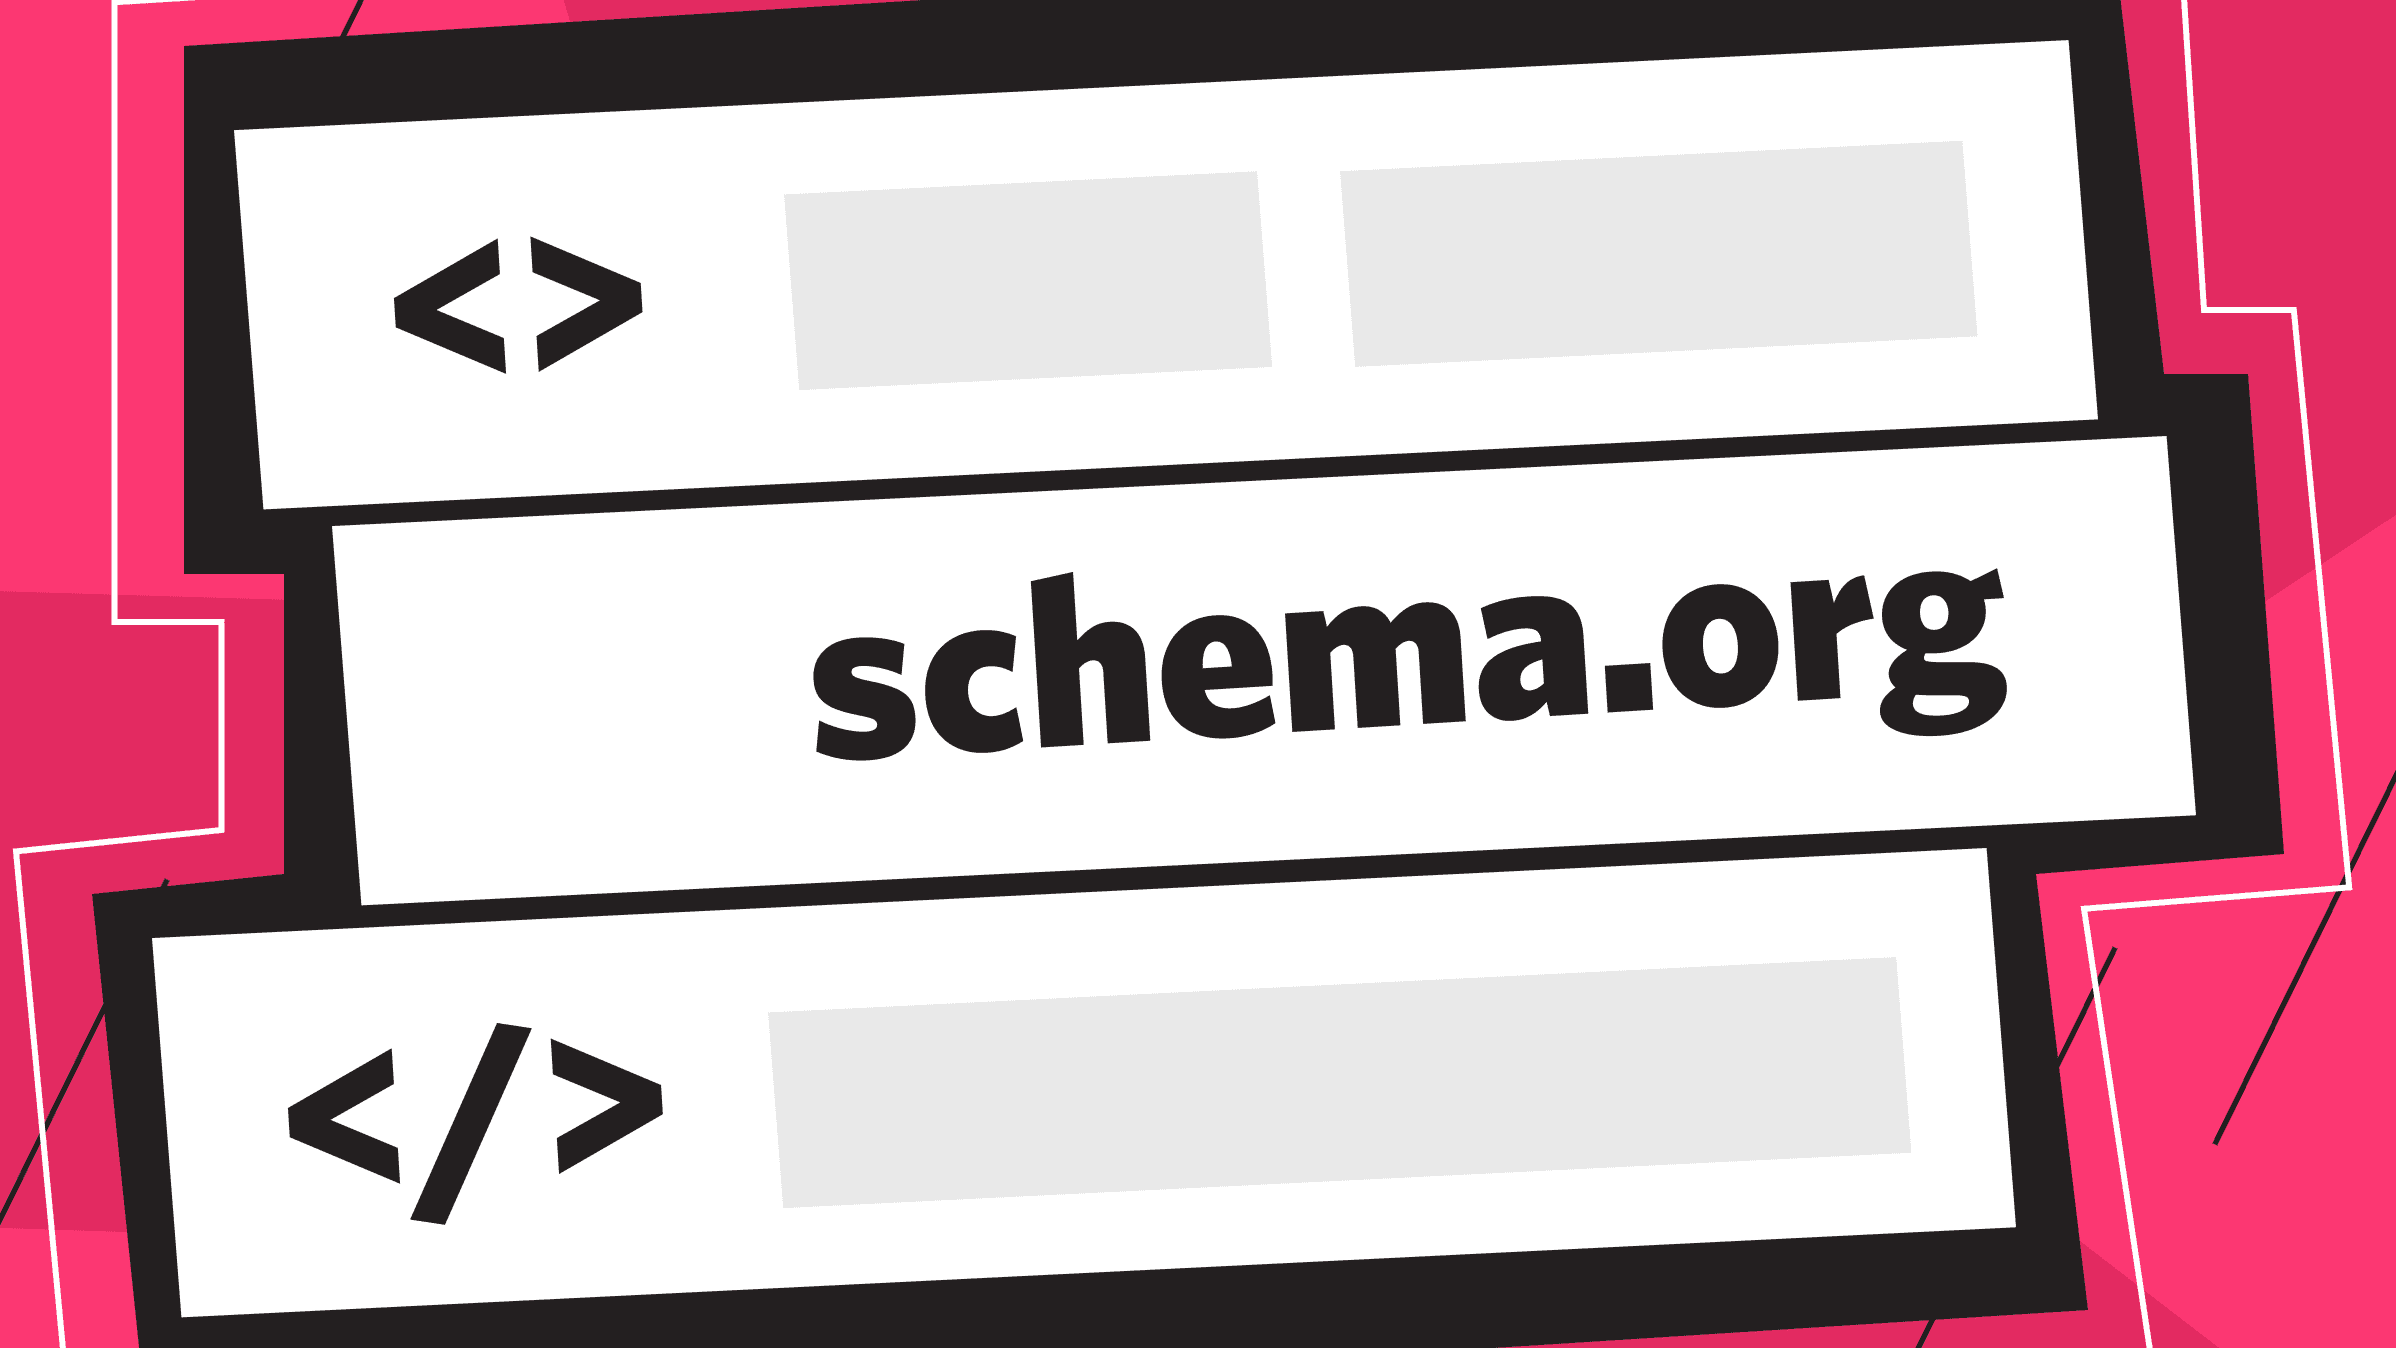 Микроразметка Schema.org: её история, цели и правила использования на сайтах